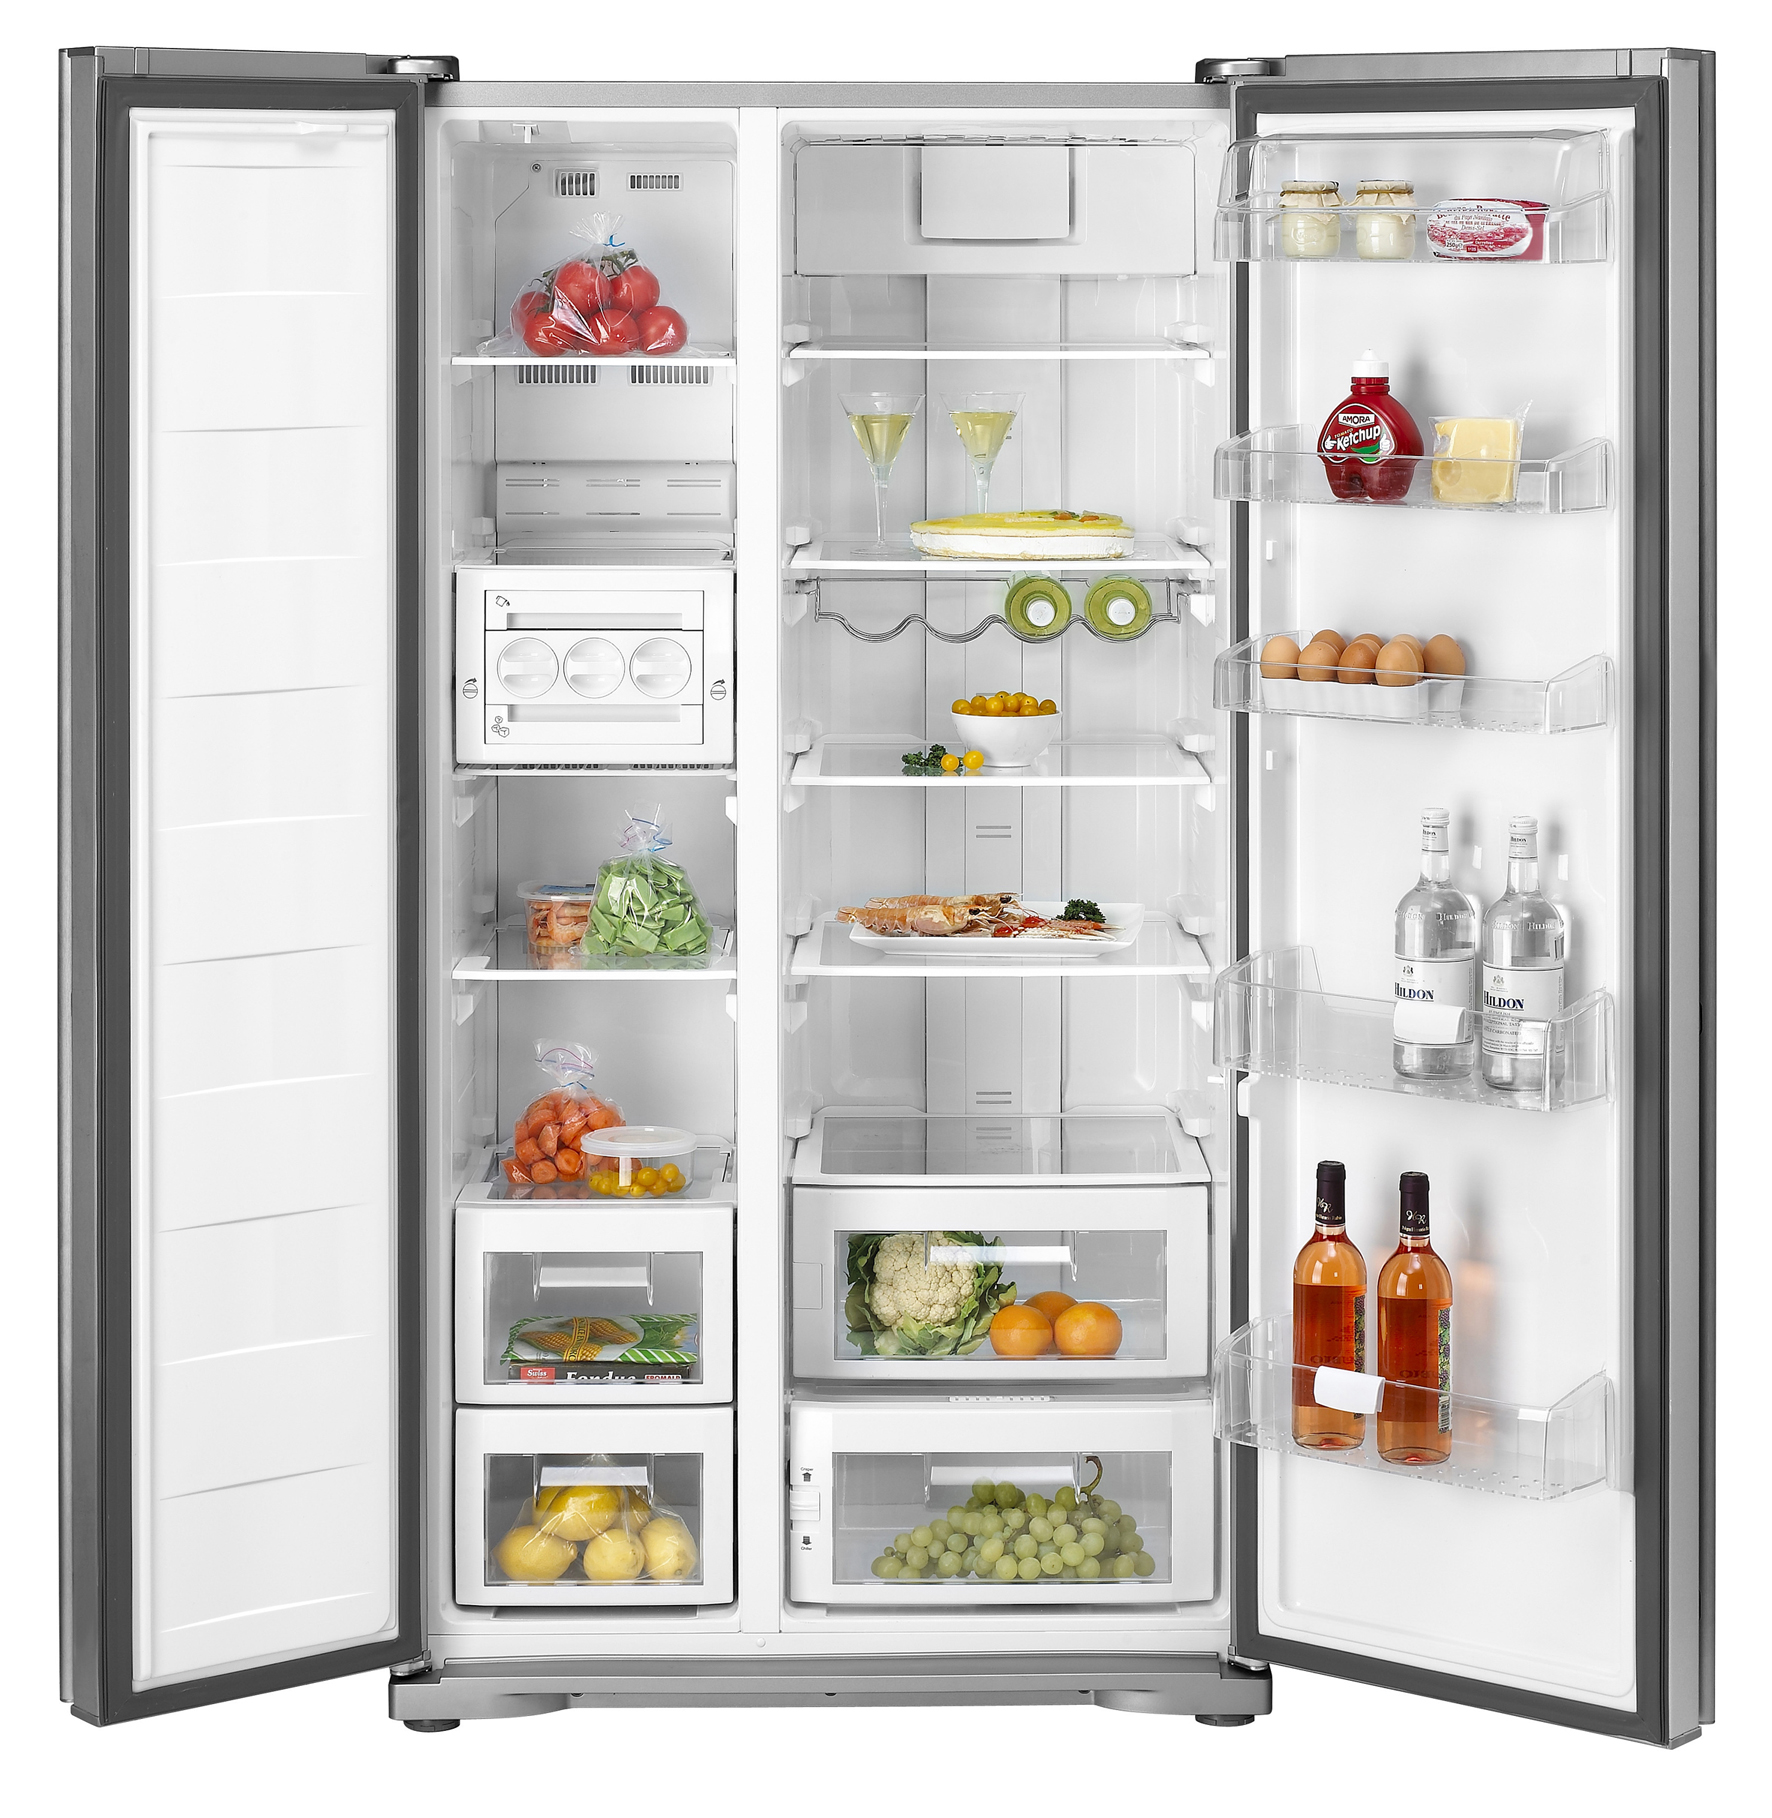 Ướp lạnh nước trái cây trong tủ lạnh nên lưu ý